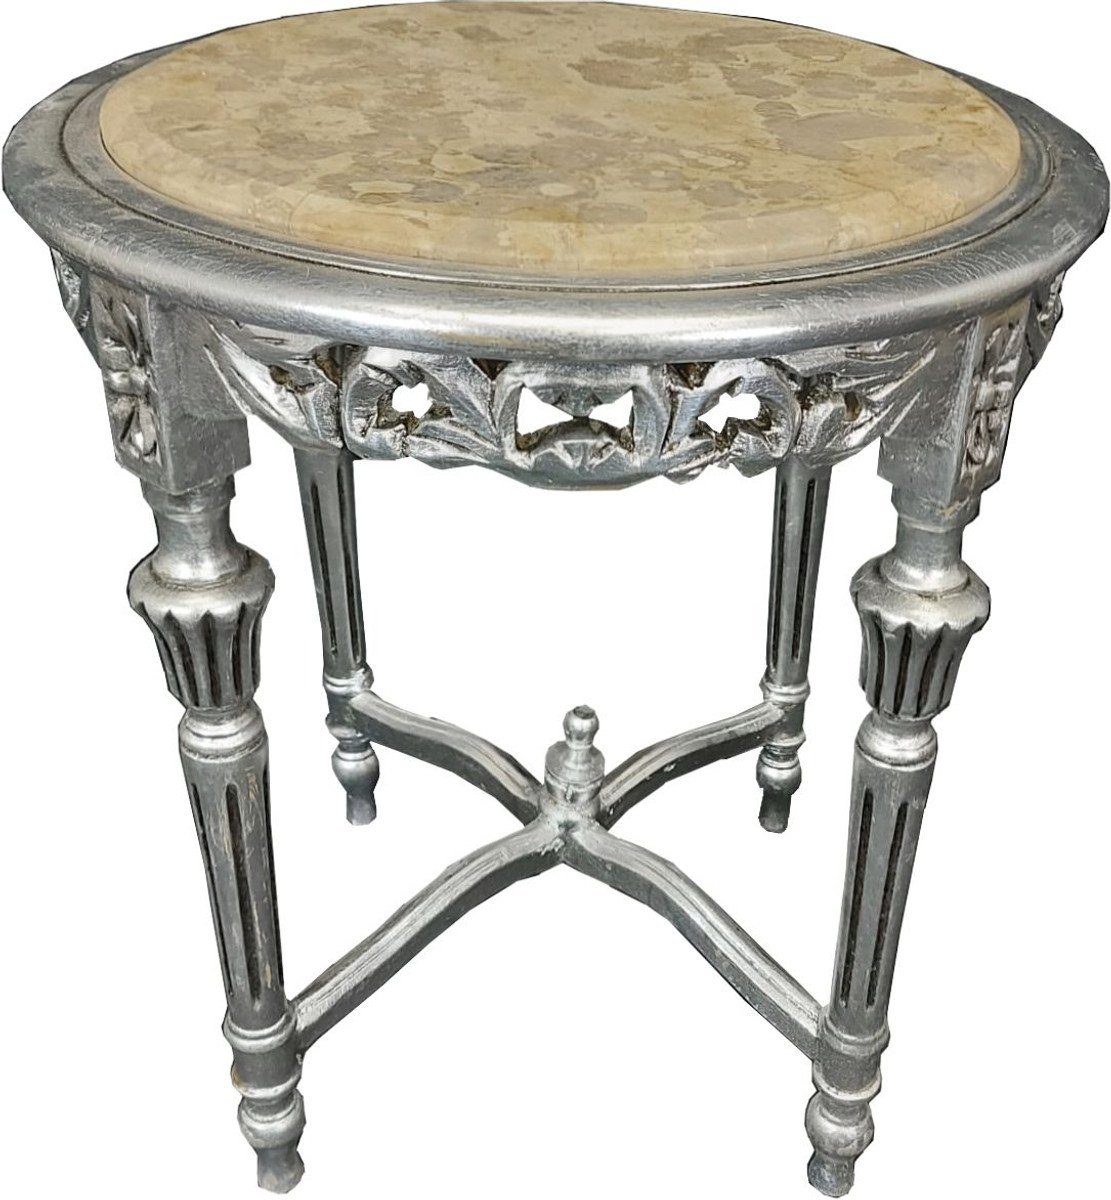 Casa Padrino Beistelltisch Casa Padrino Barock Beistelltisch Silber / Creme - Handgefertigter Massivholz Tisch mit Marmorplatte - Barock Wohnzimmer Möbel